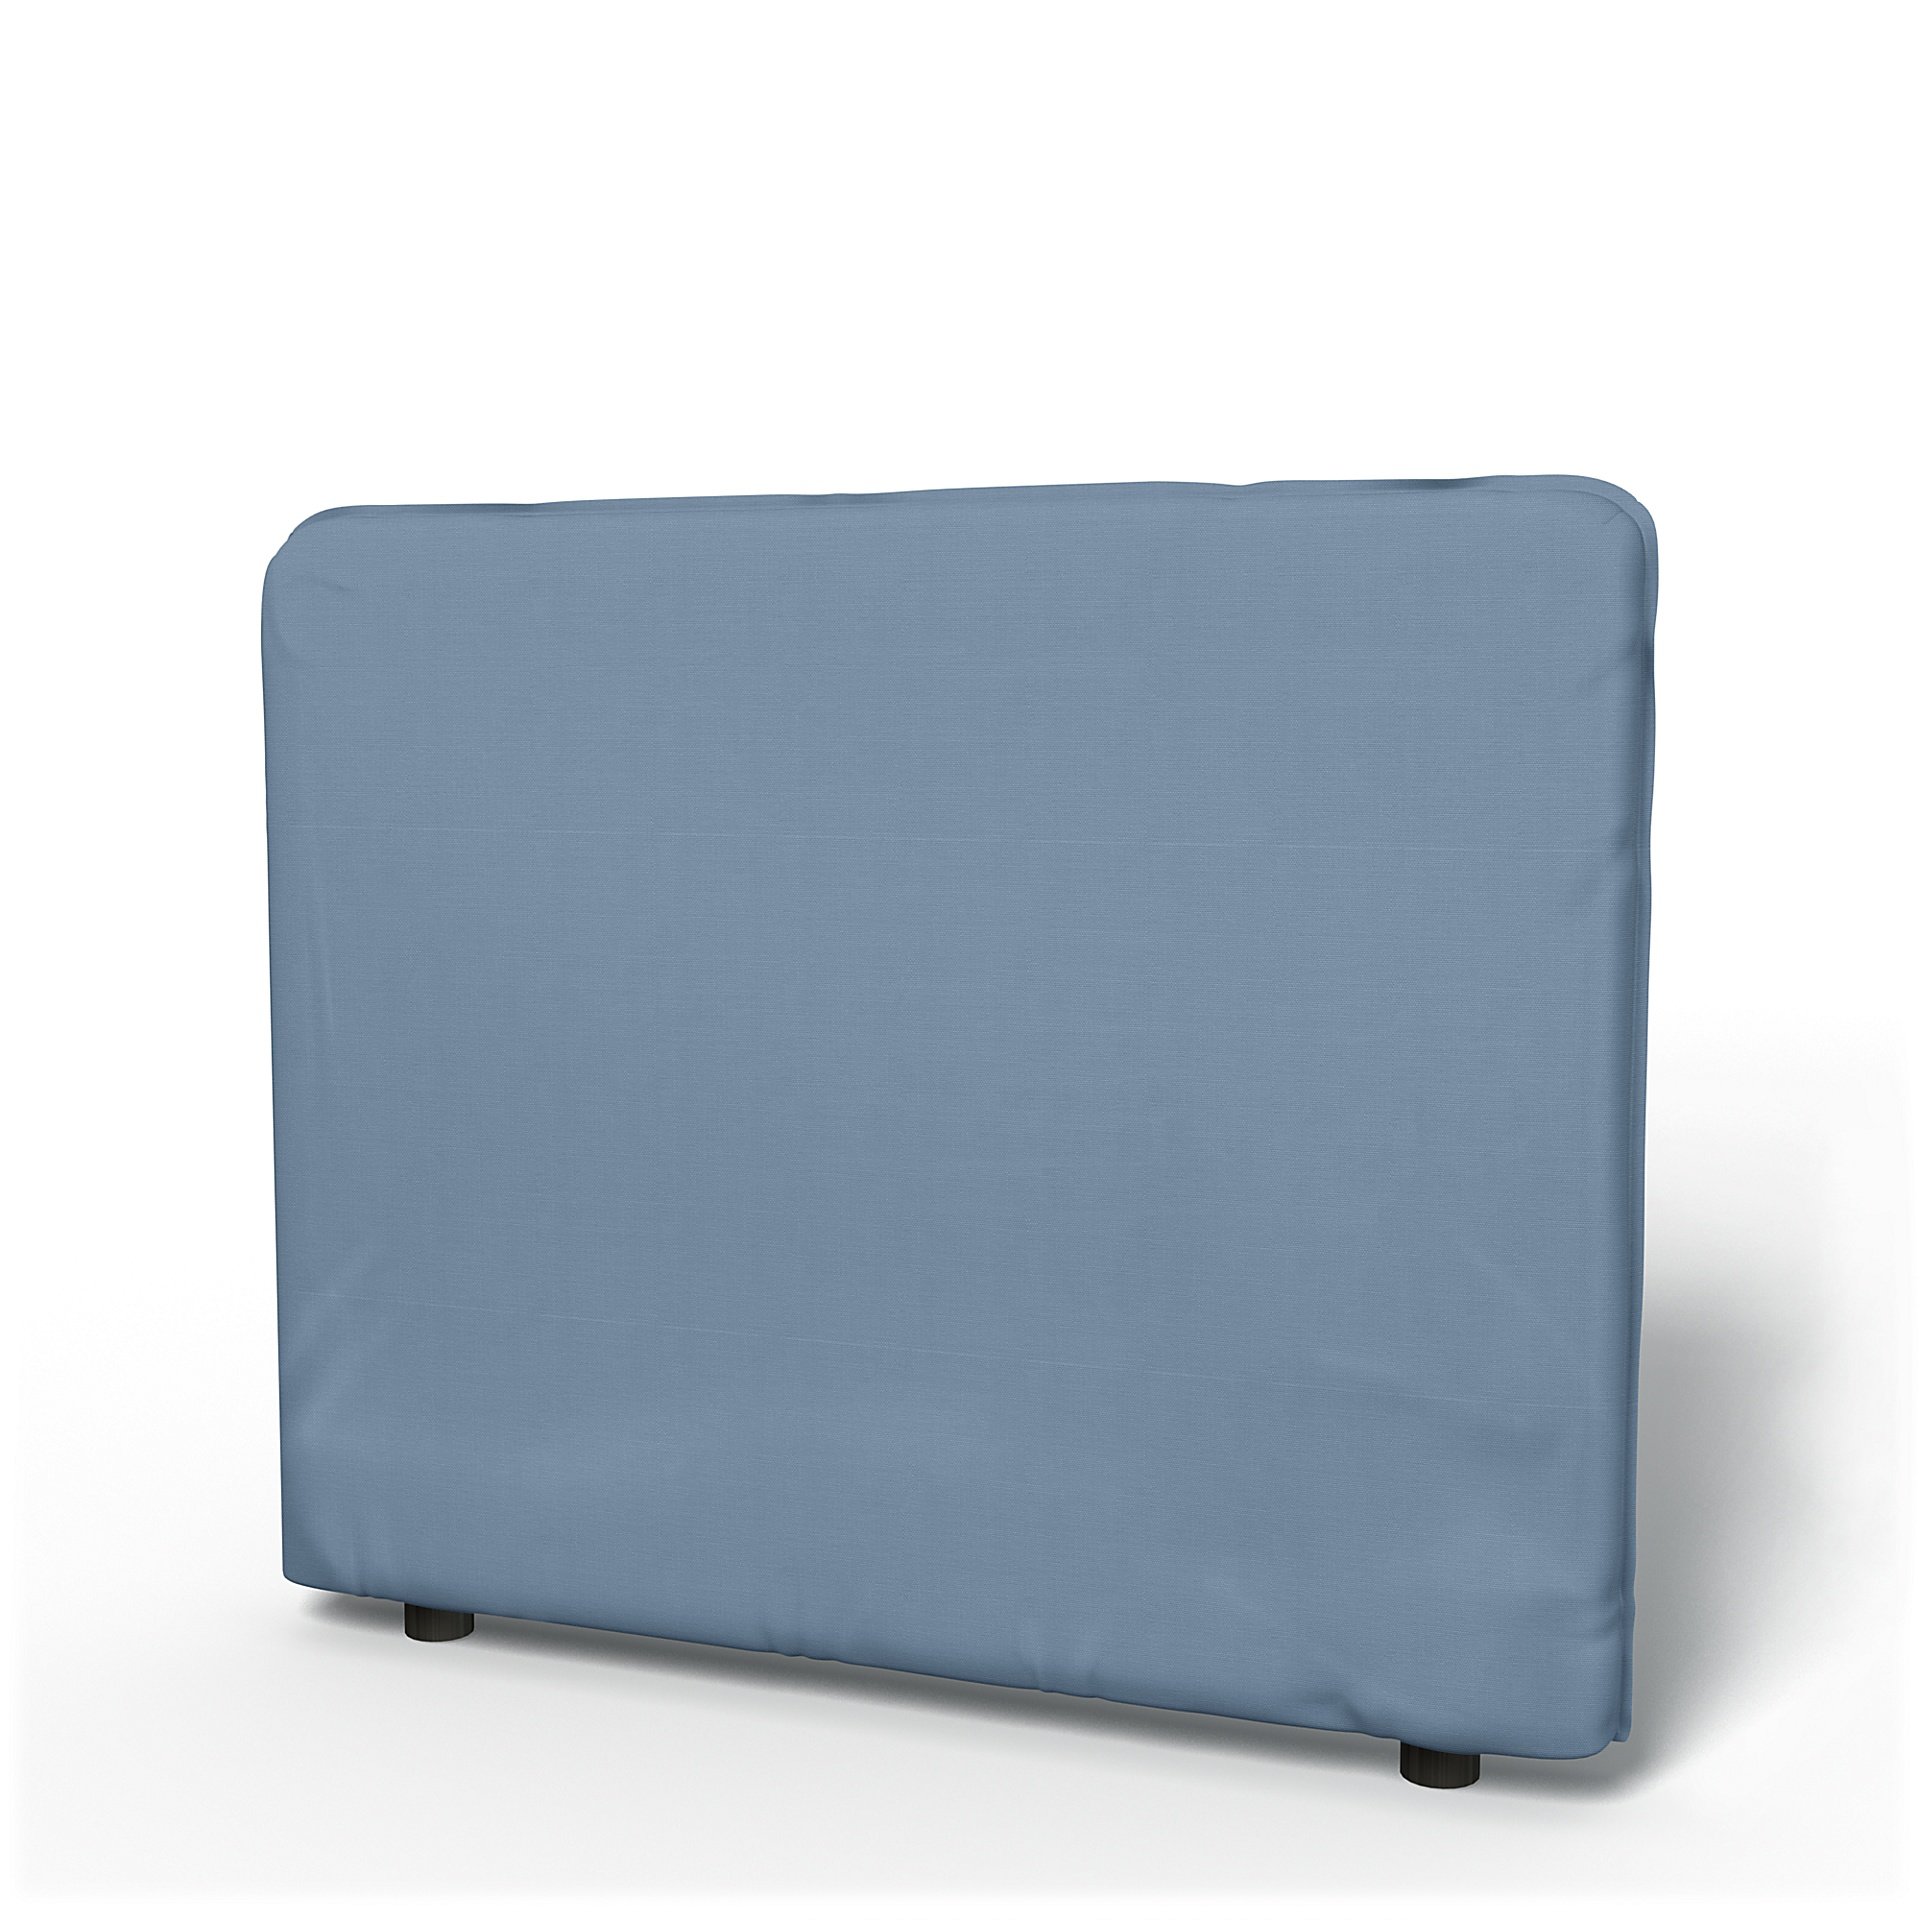 IKEA - Vallentuna Low Backrest Cover 100x80cm 39x32in, Dusty Blue, Cotton - Bemz